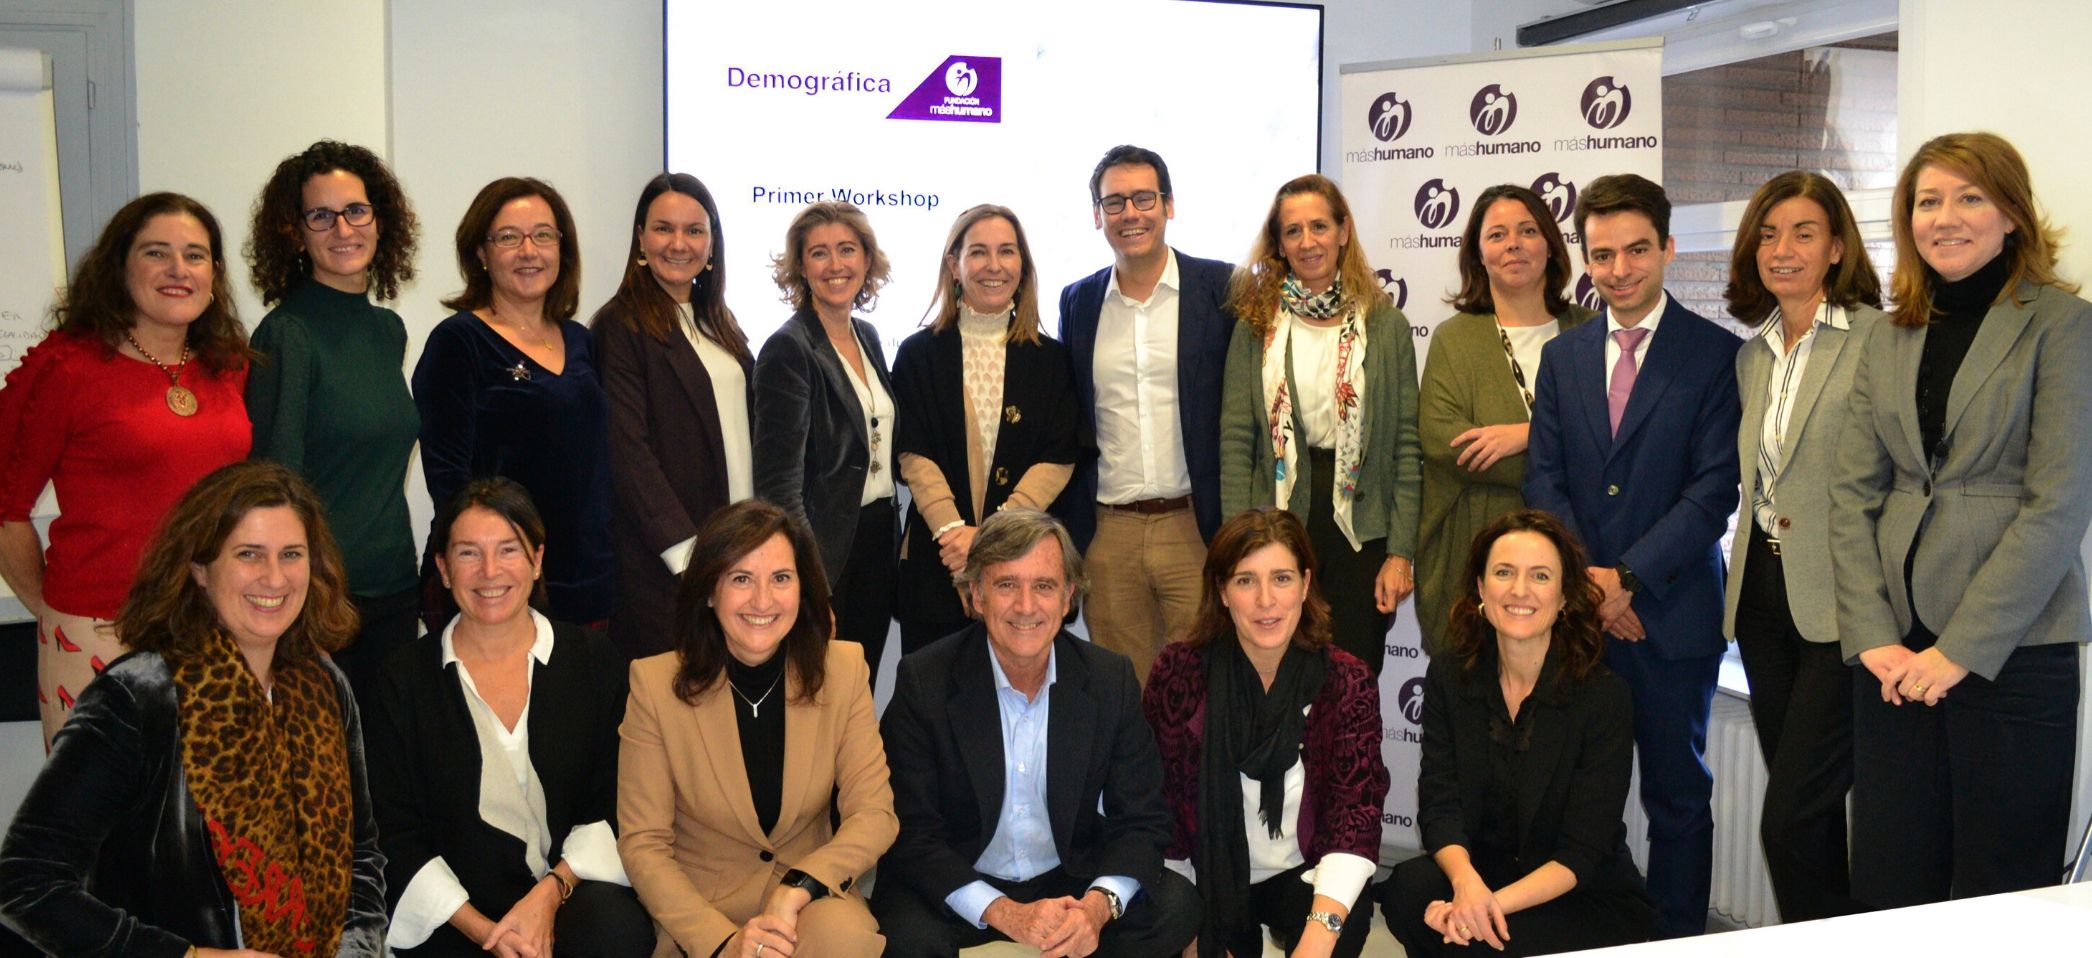 Nace la “Responsabilidad Demográfica Empresarial” como modelo de gestión para hacer frente al reto demográfico de España desde las empresas